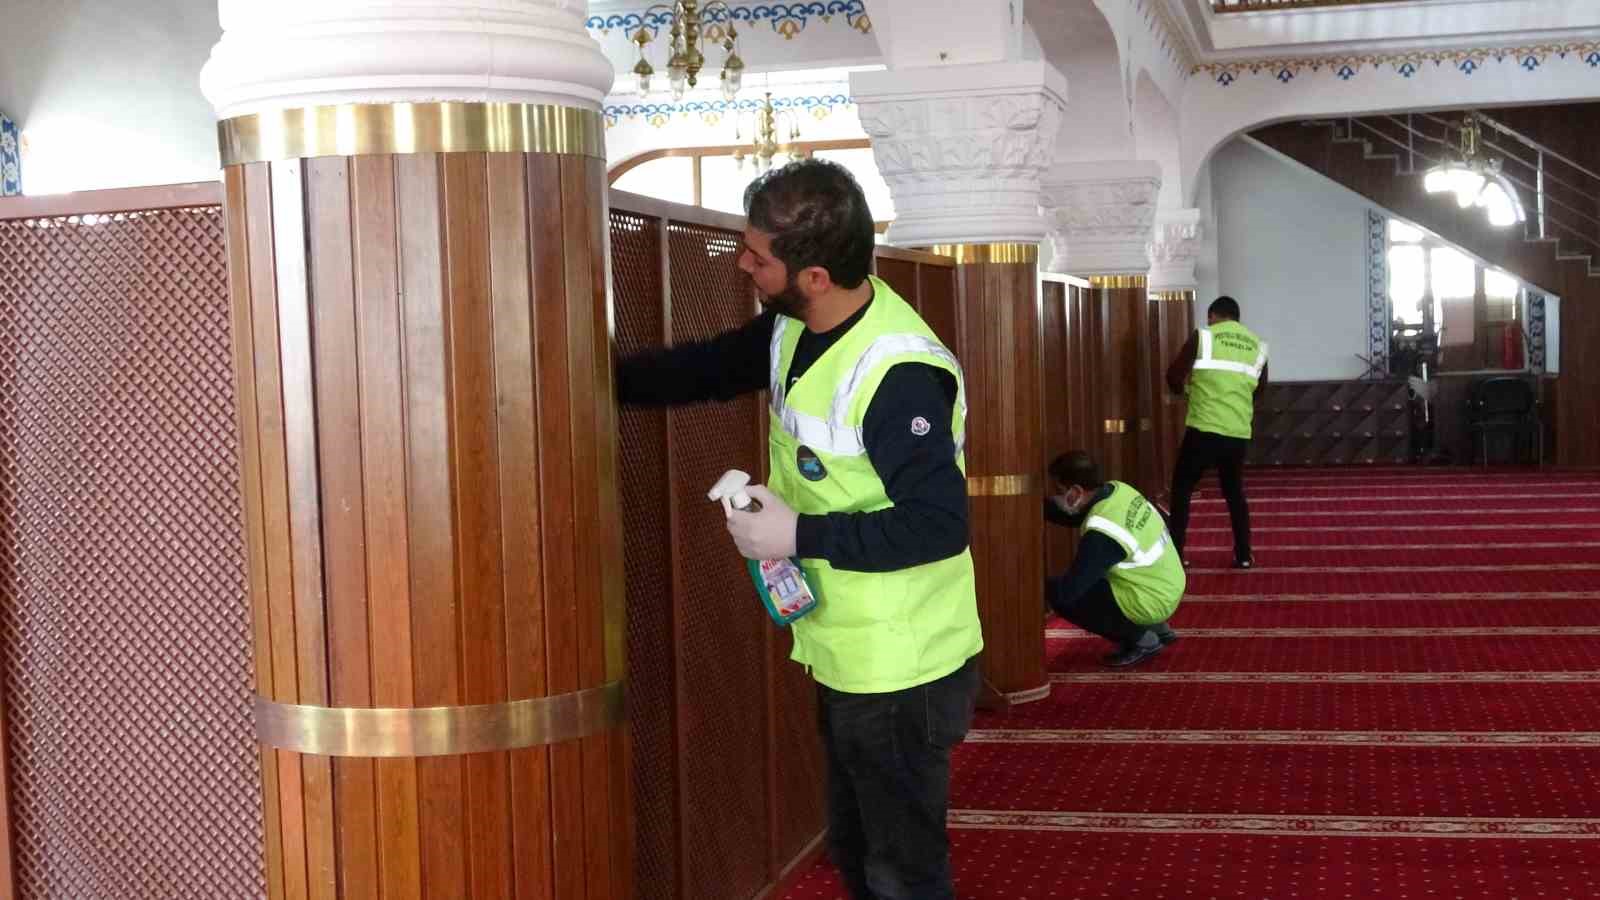 Van’da camiler Ramazan ayına hazırlanıyor